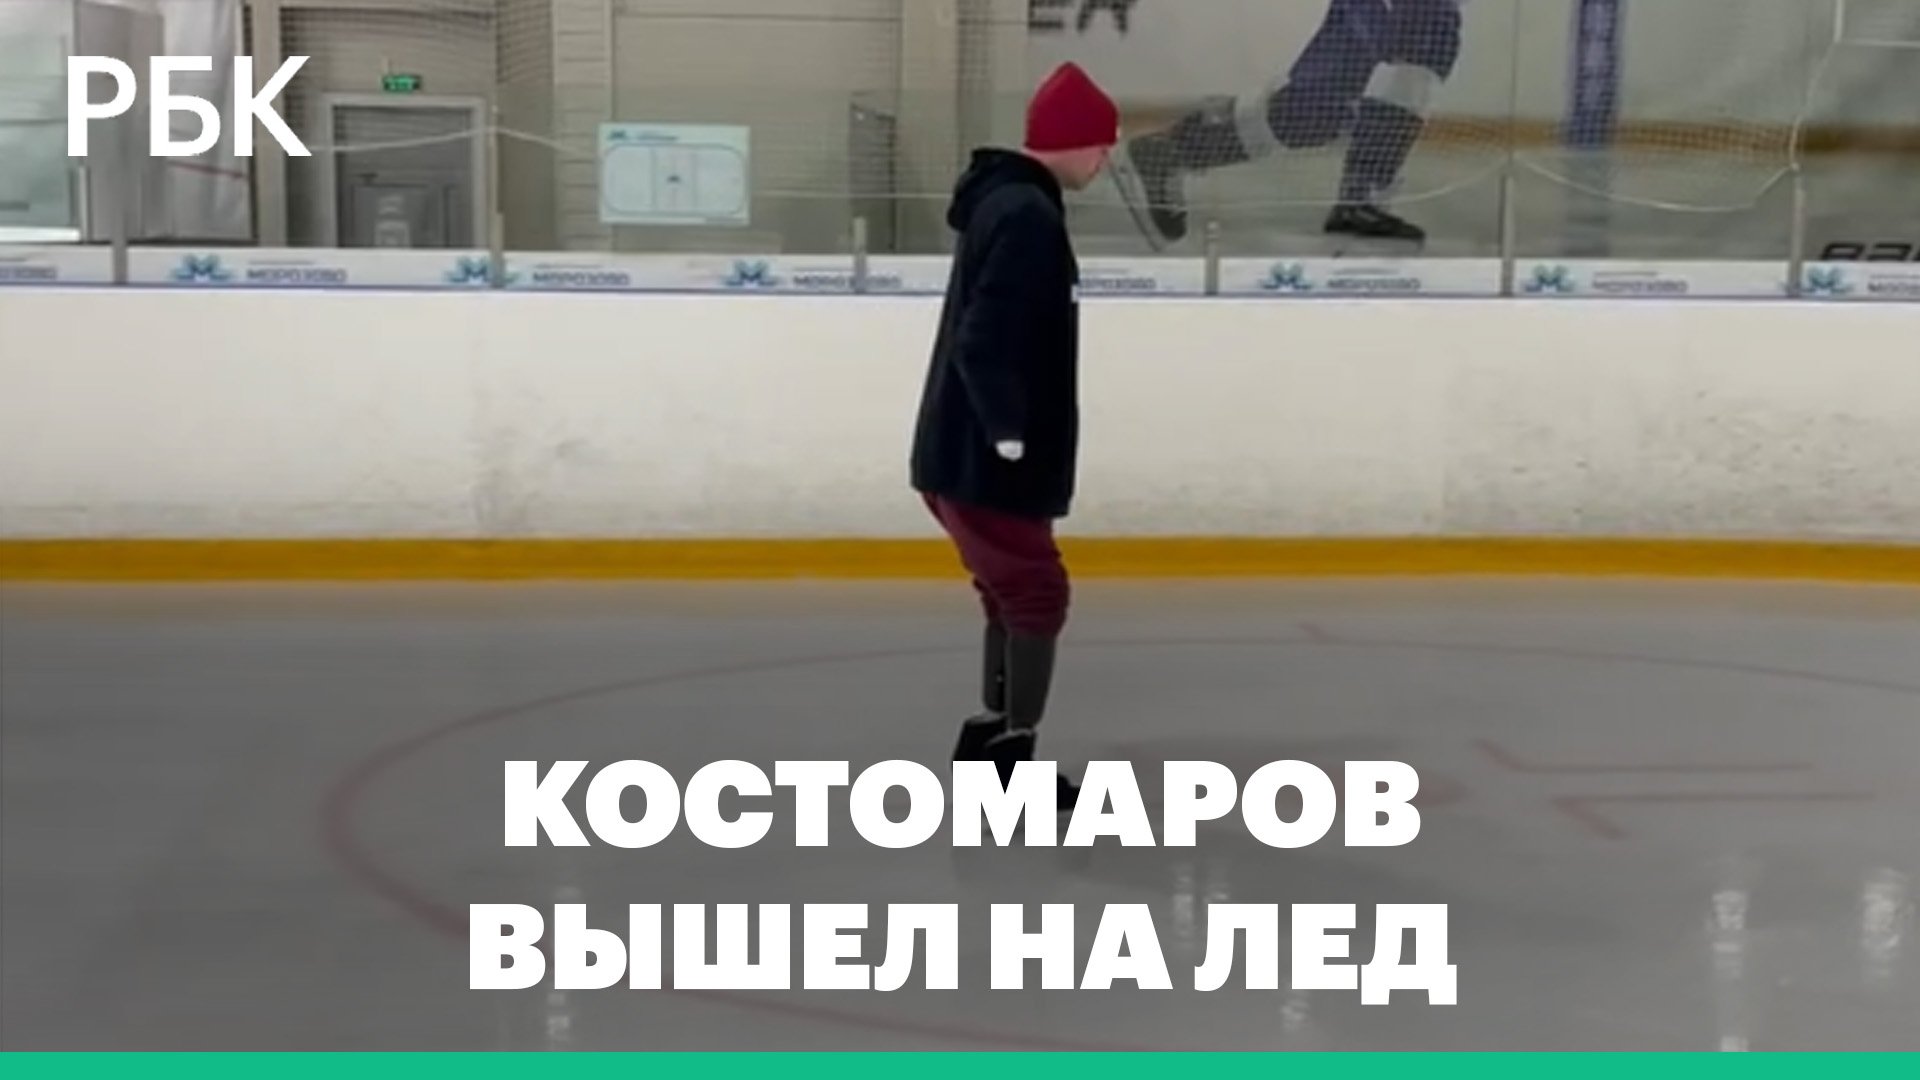 Костомаров впервые после протезирования вышел на лед на коньках